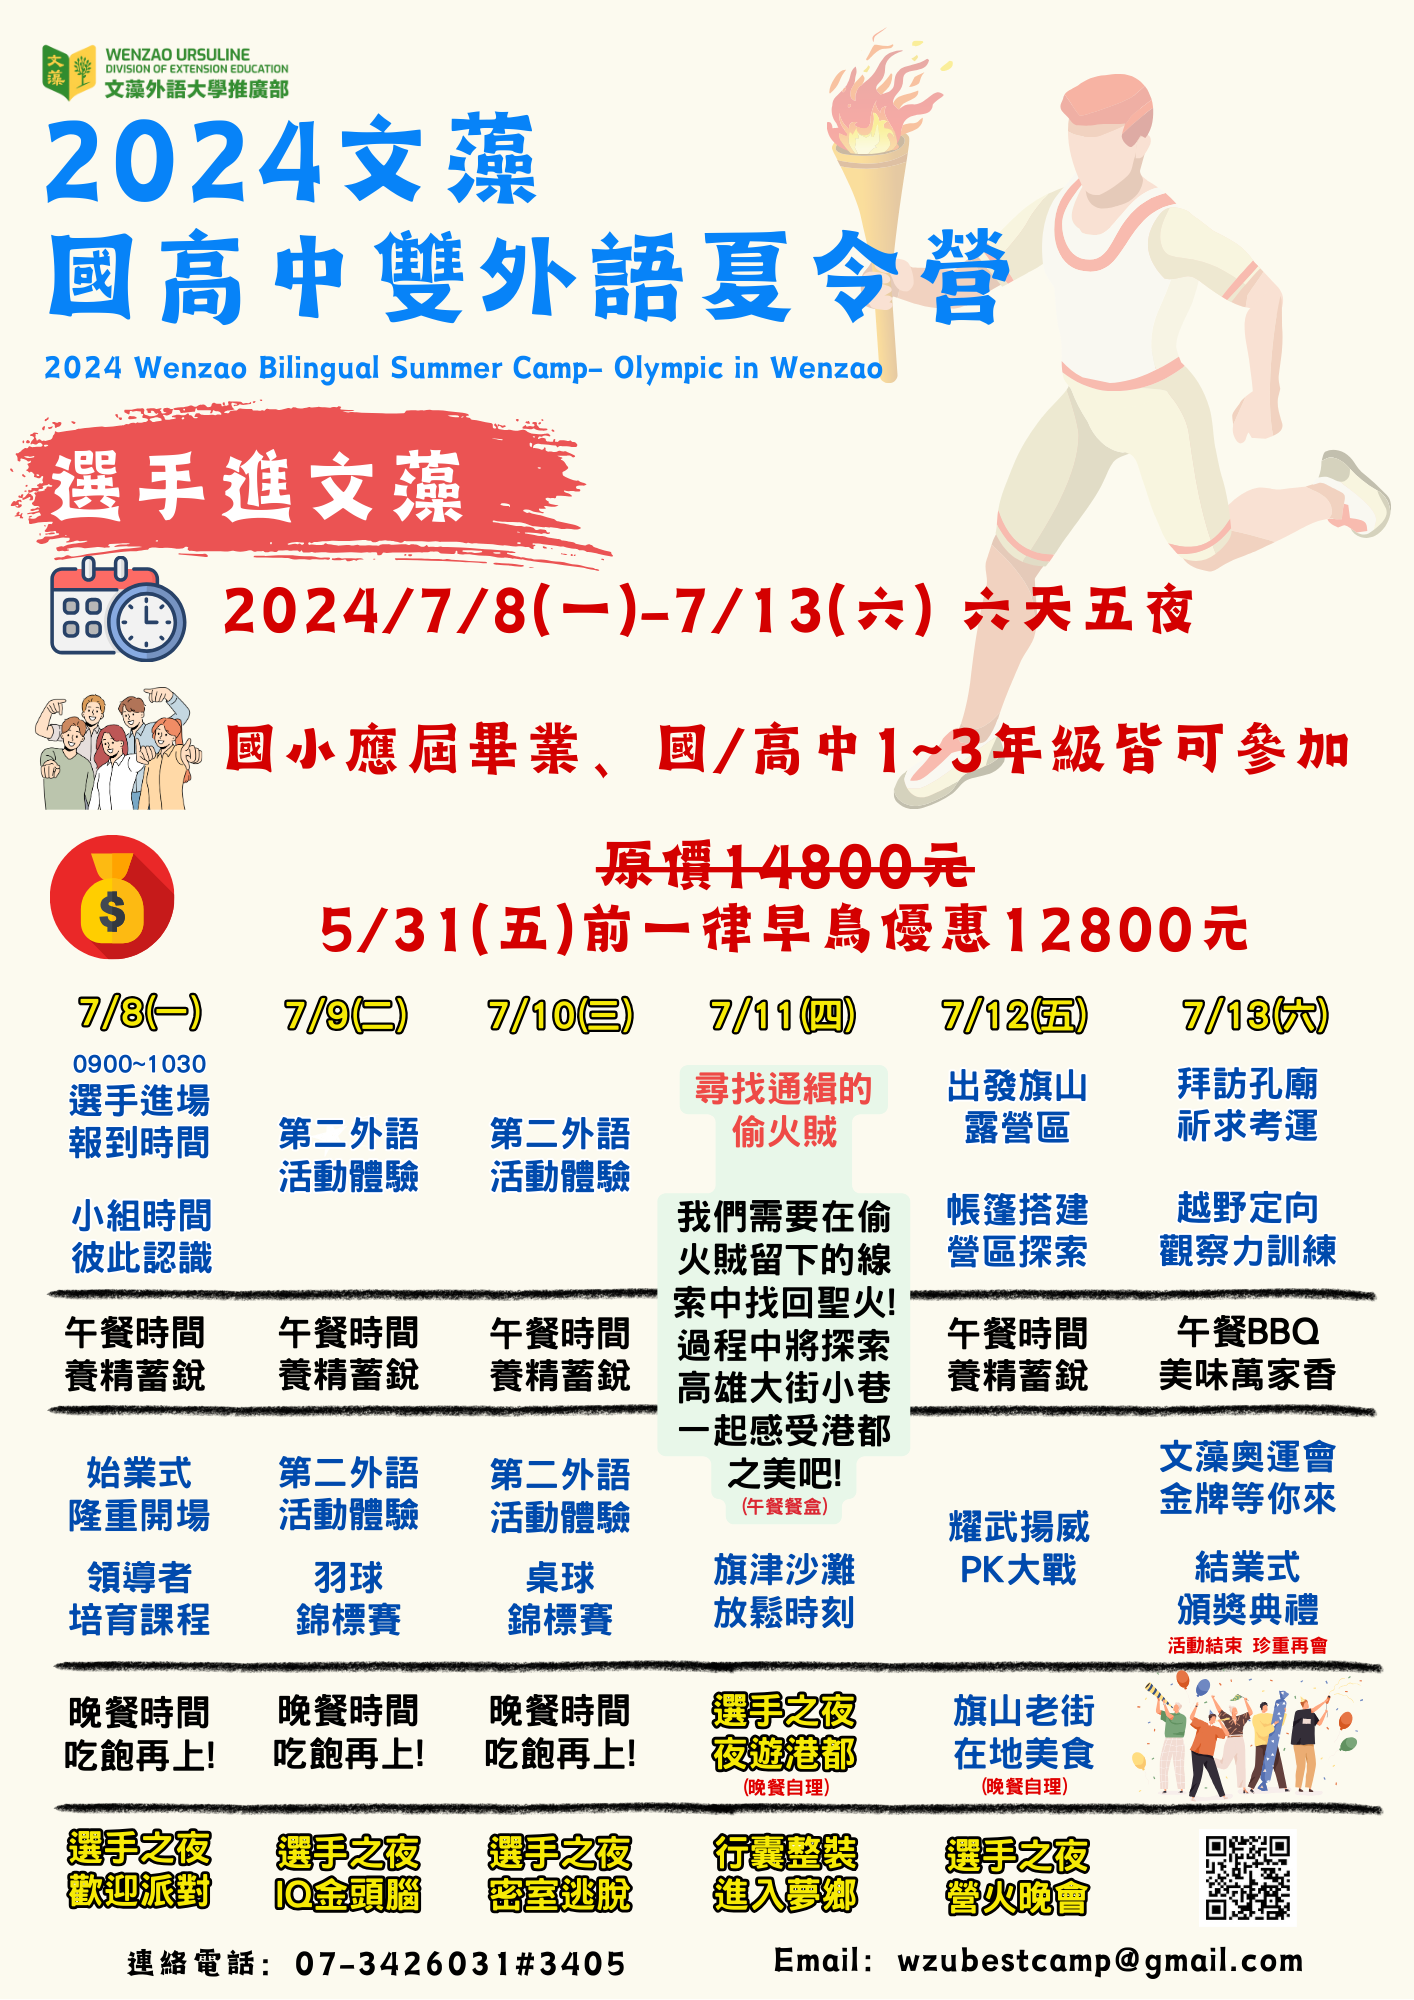 文藻外語大學「2024國高中雙外語夏令營」